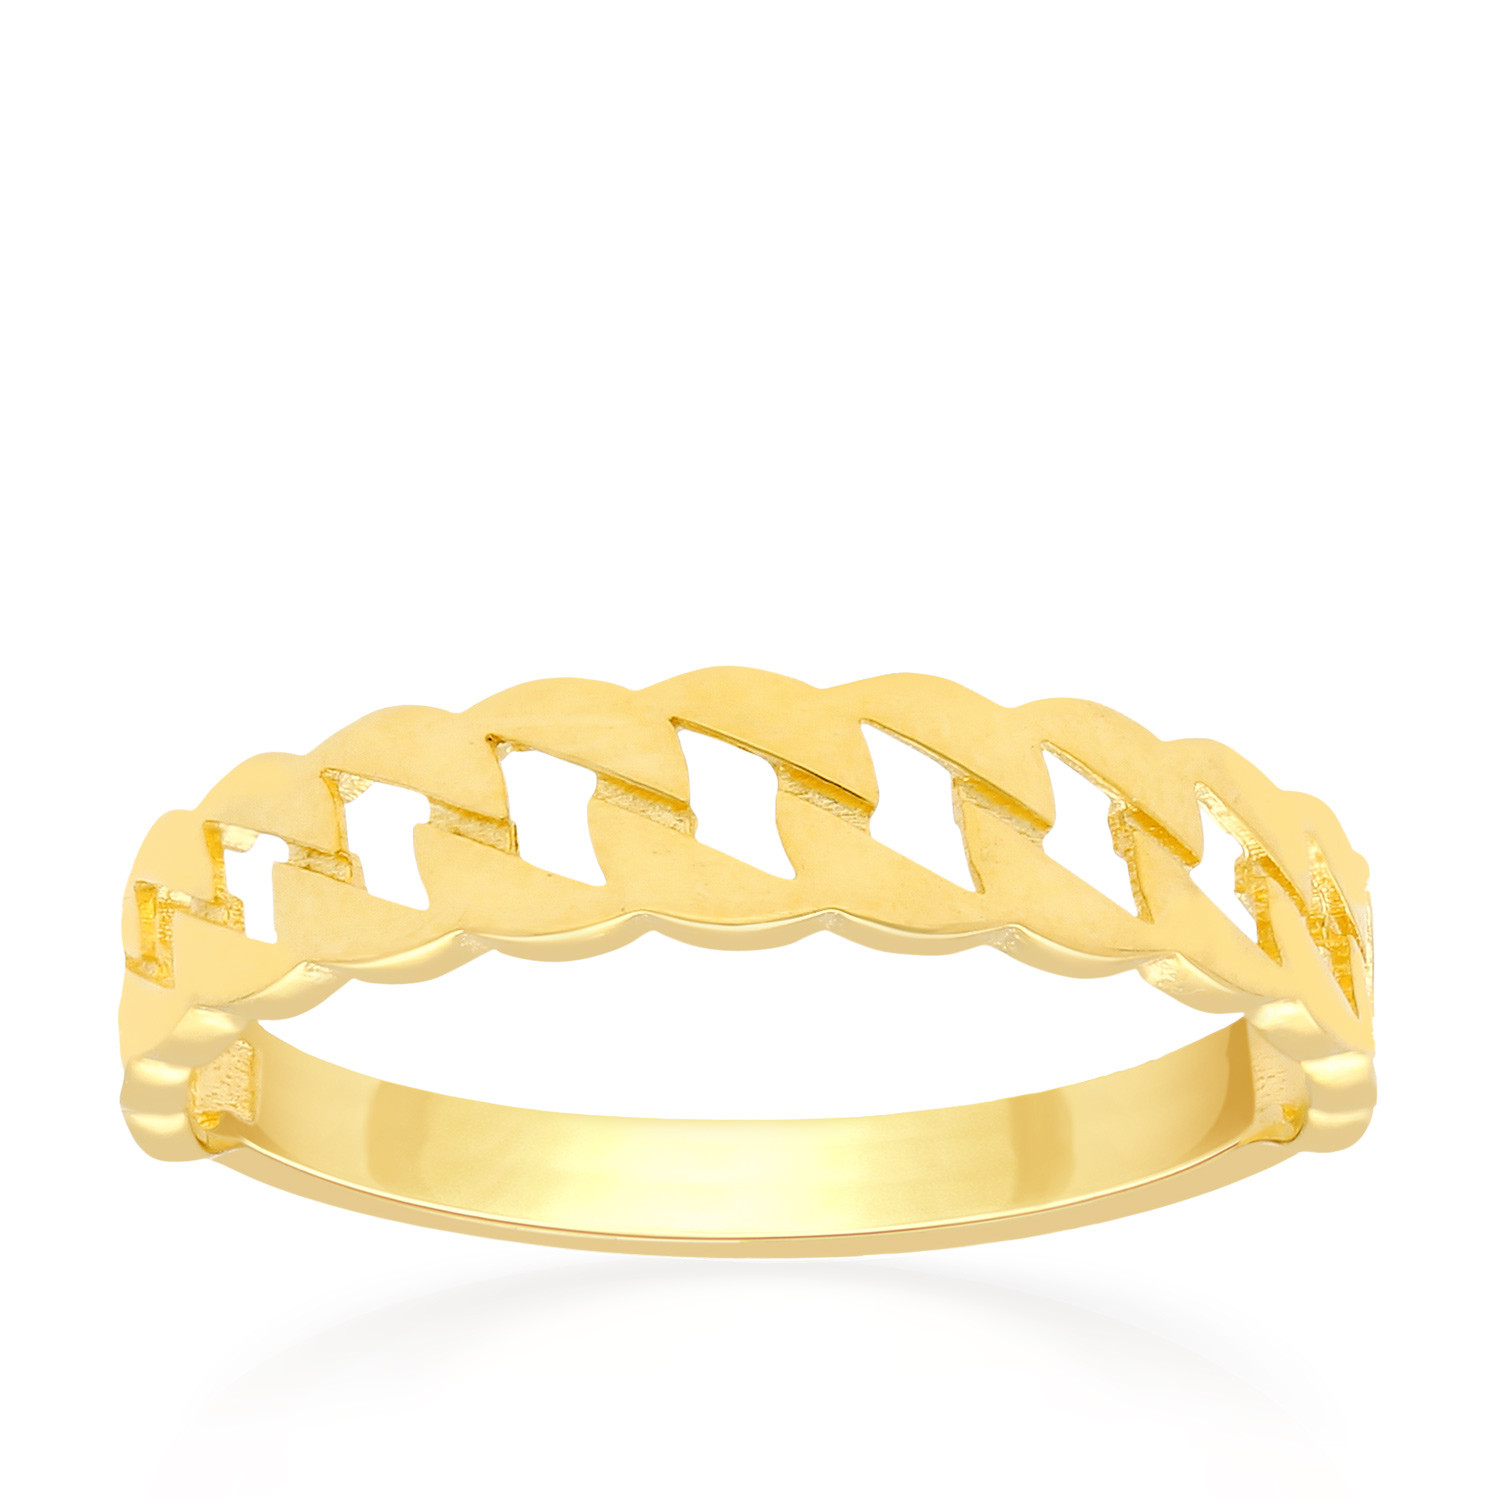 Malabar Gold Ring ZOFSHRN011